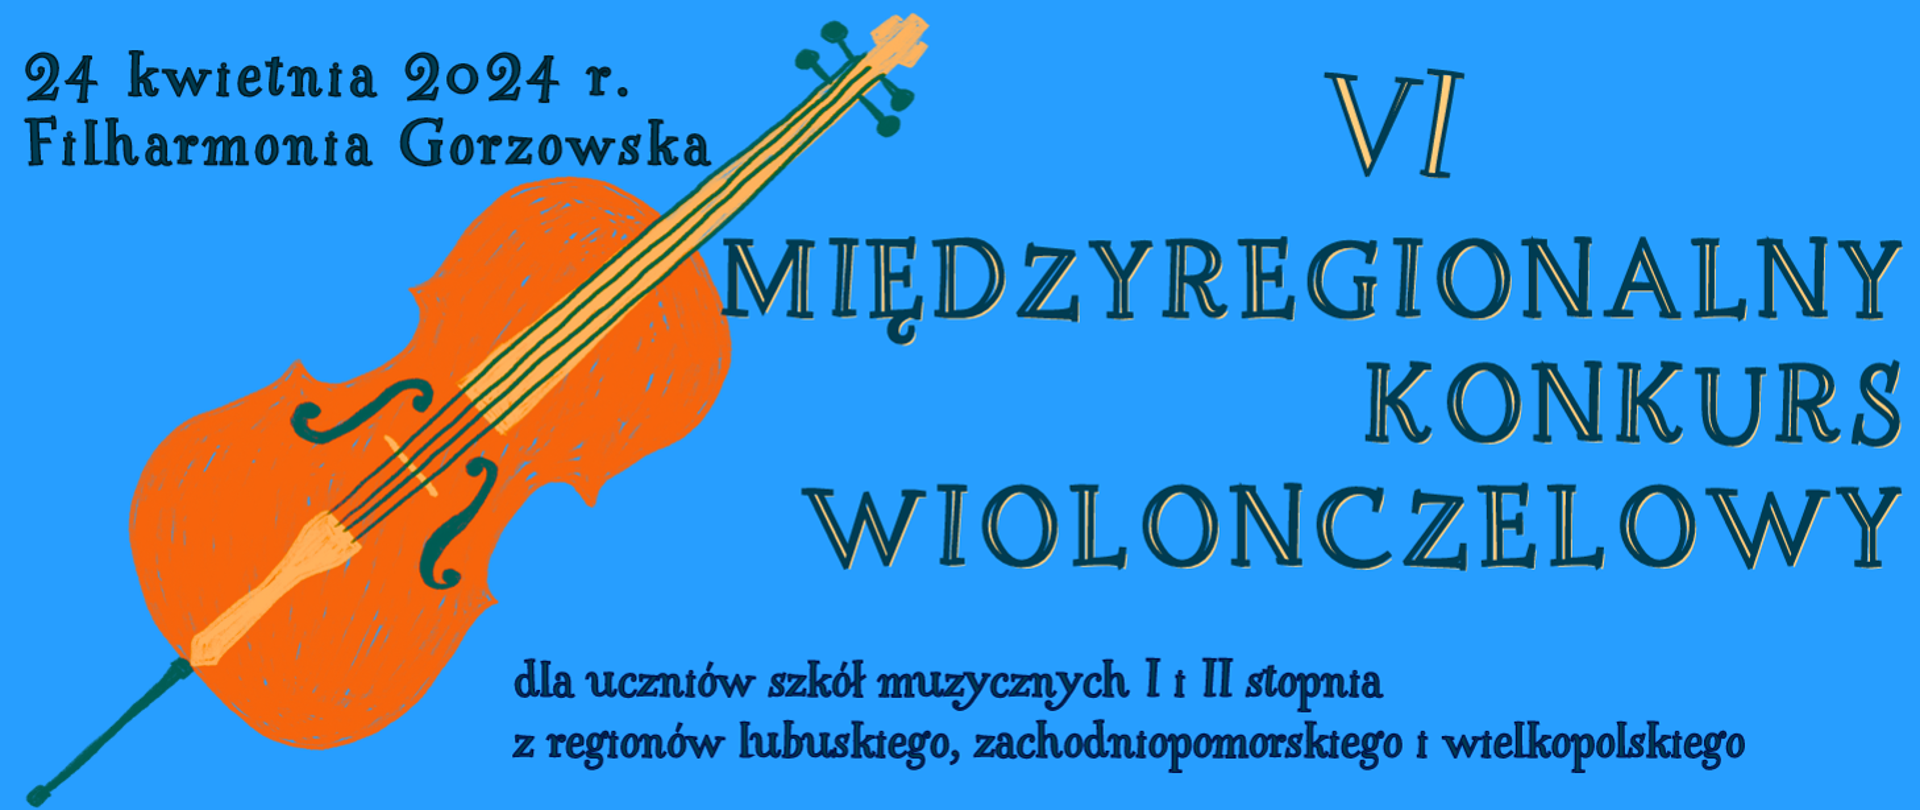 Zdjęcie przedstawia napis VI MIĘDZYREGIONALNY KONKURS WIOLONCZELOWY dla uczniów szkół muzycznych I i II stopnia z regionu lubuskiego, zachodniopomorskiego i wielkopolskiego. Po lewej stronie rysunek wiolonczeli. 